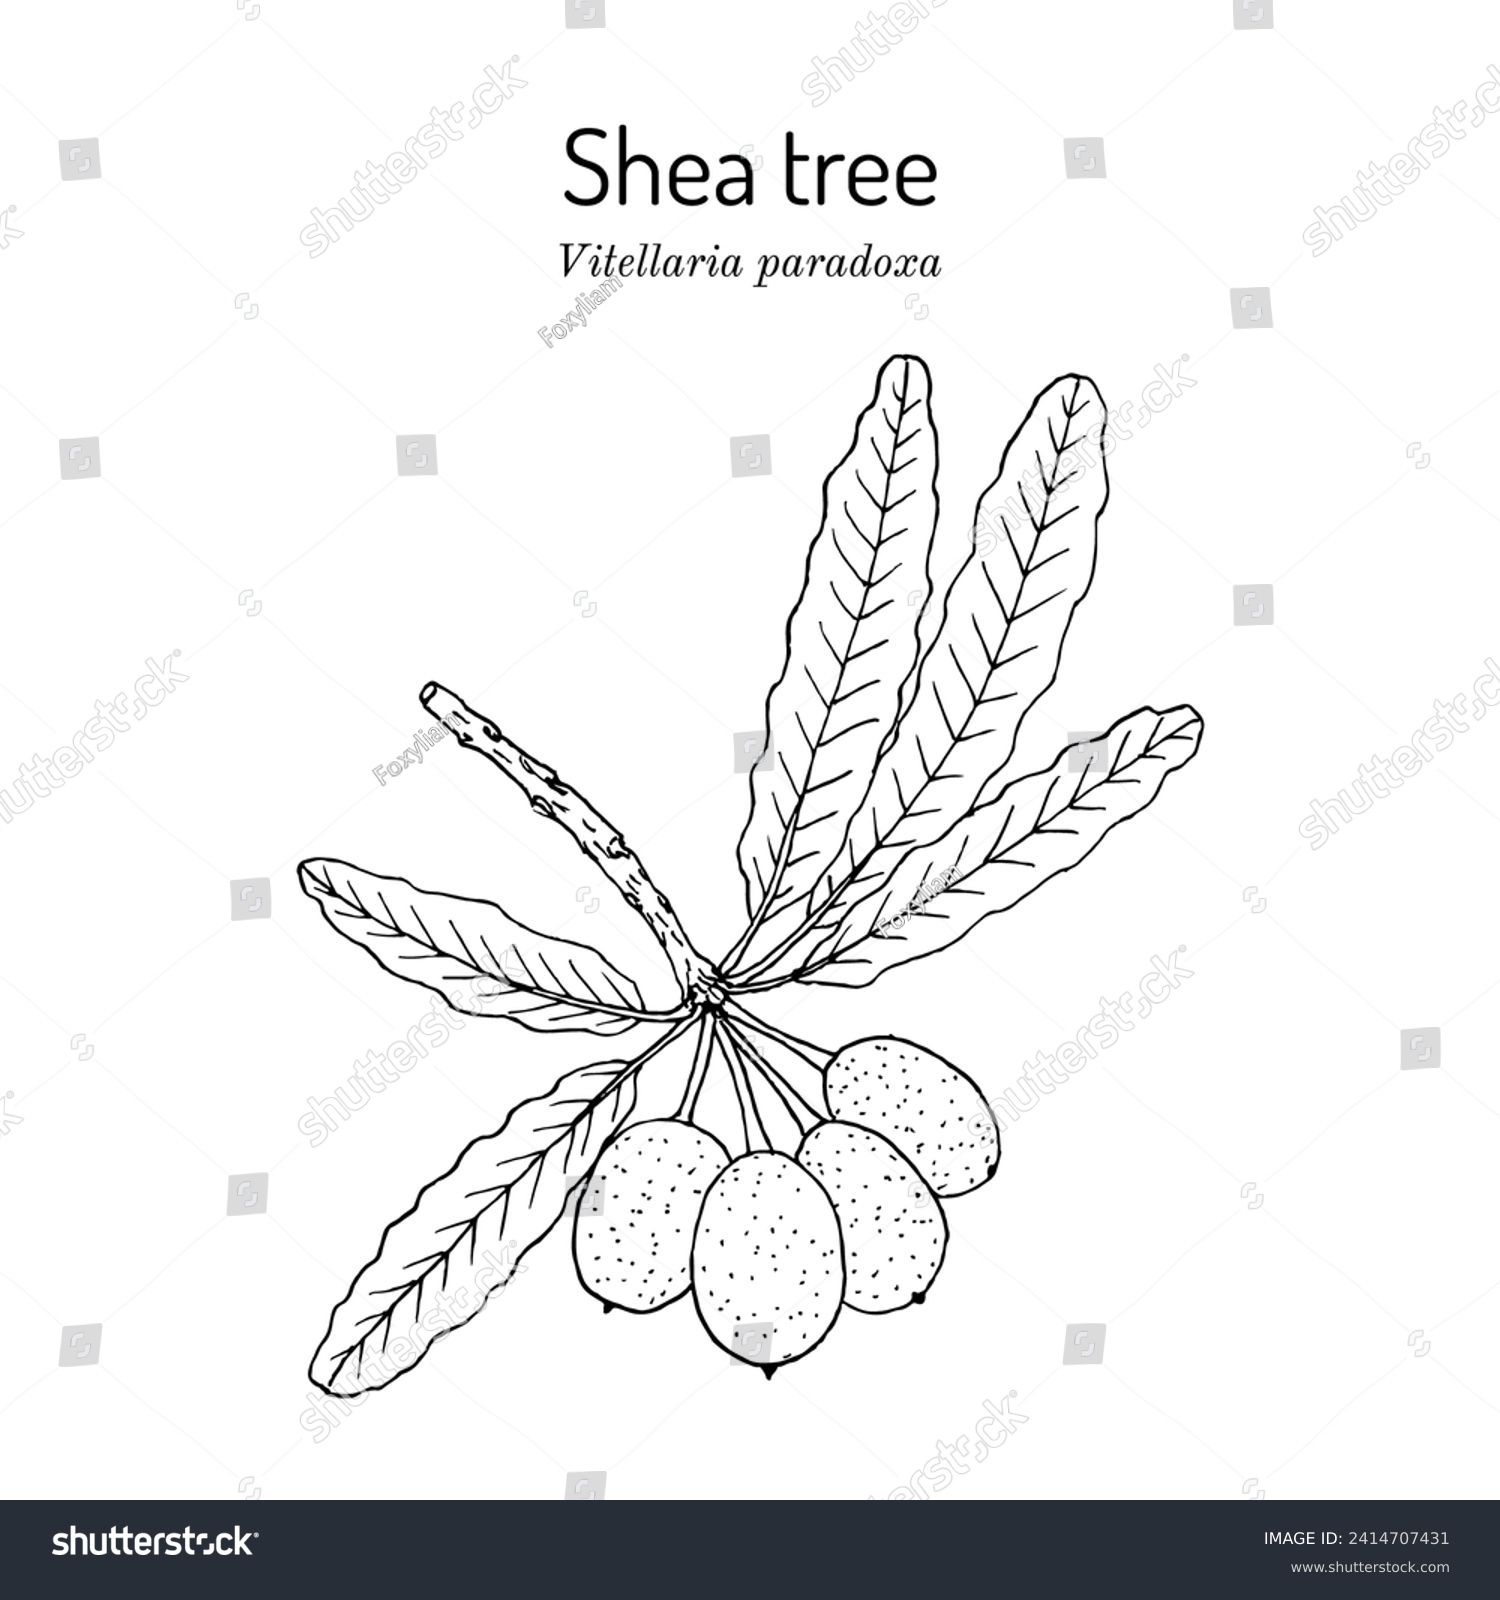 SVG of Shea tree, or vitellaria paradoxa, edible and medicinal plant. Hand drawn botanical vector illustration svg